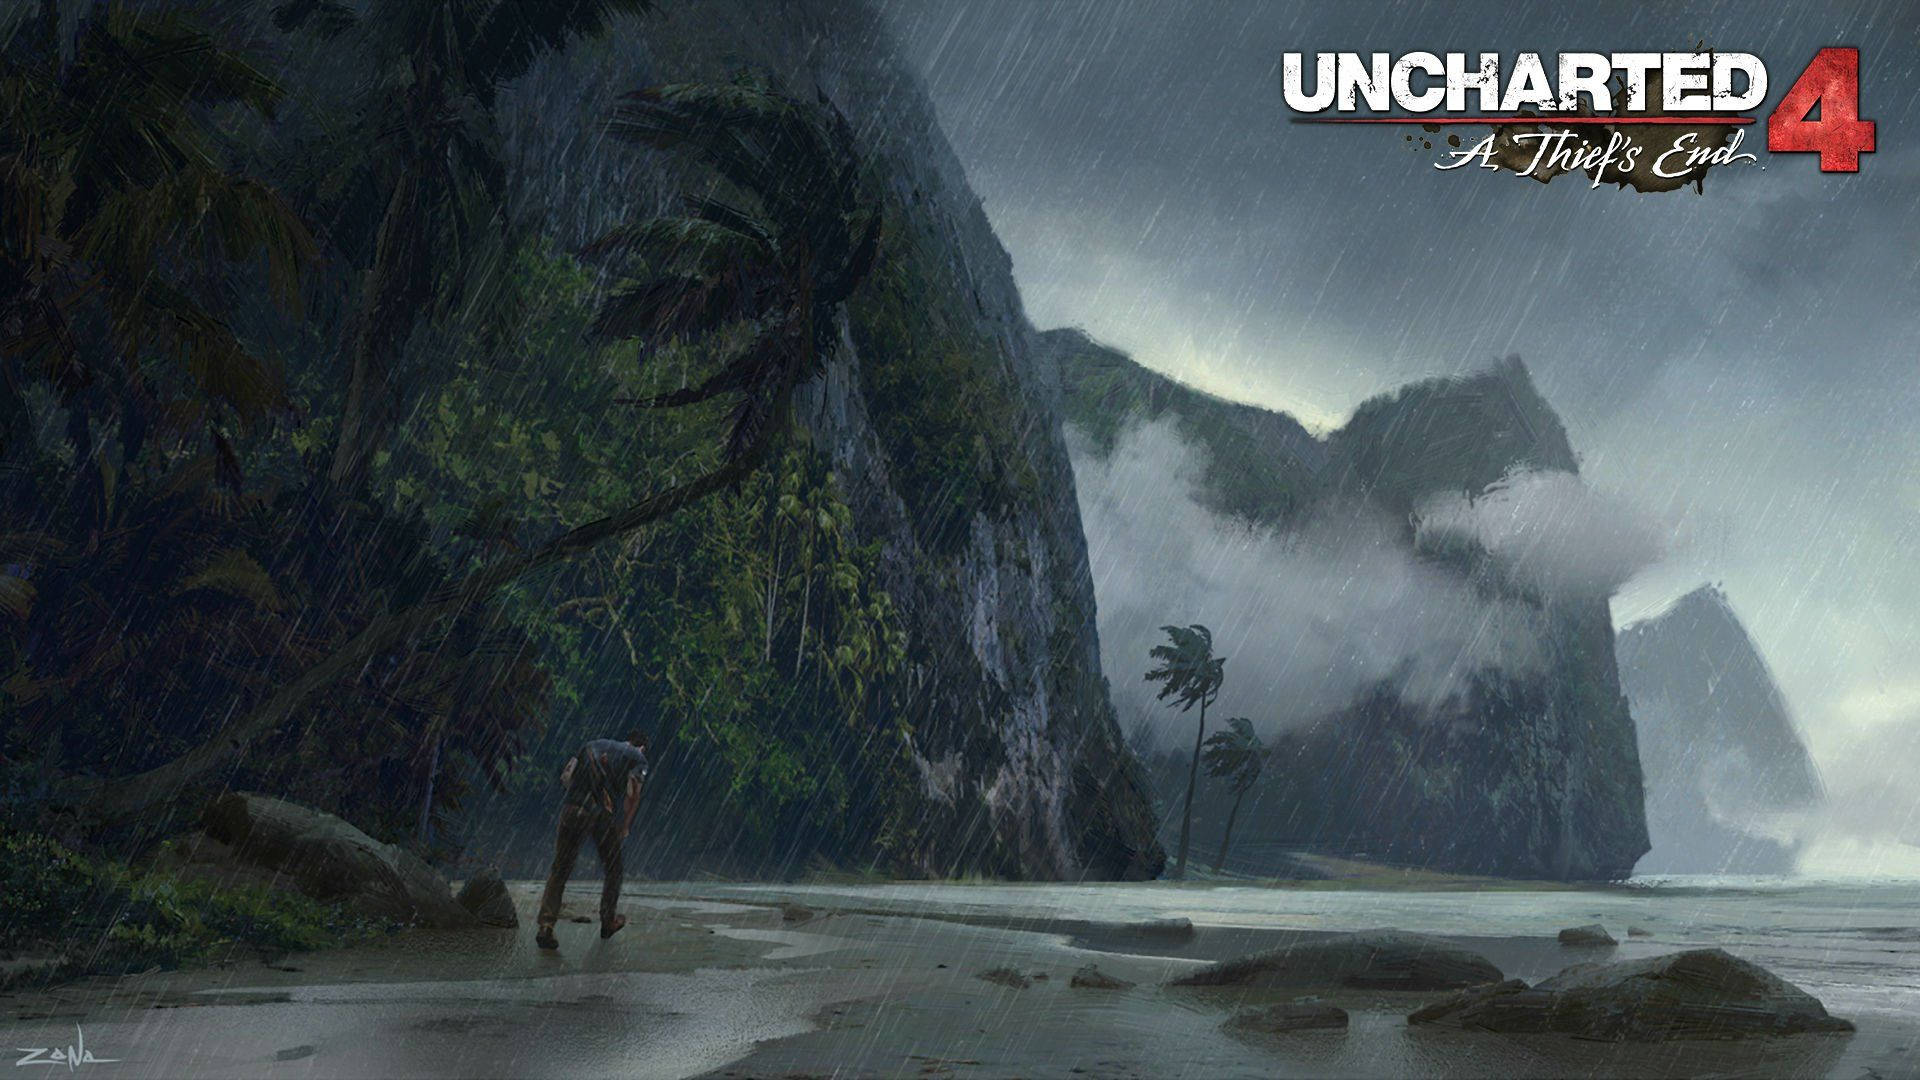 2016 Uncharted 4: A Thief's End PS4 desktop wallpaper.